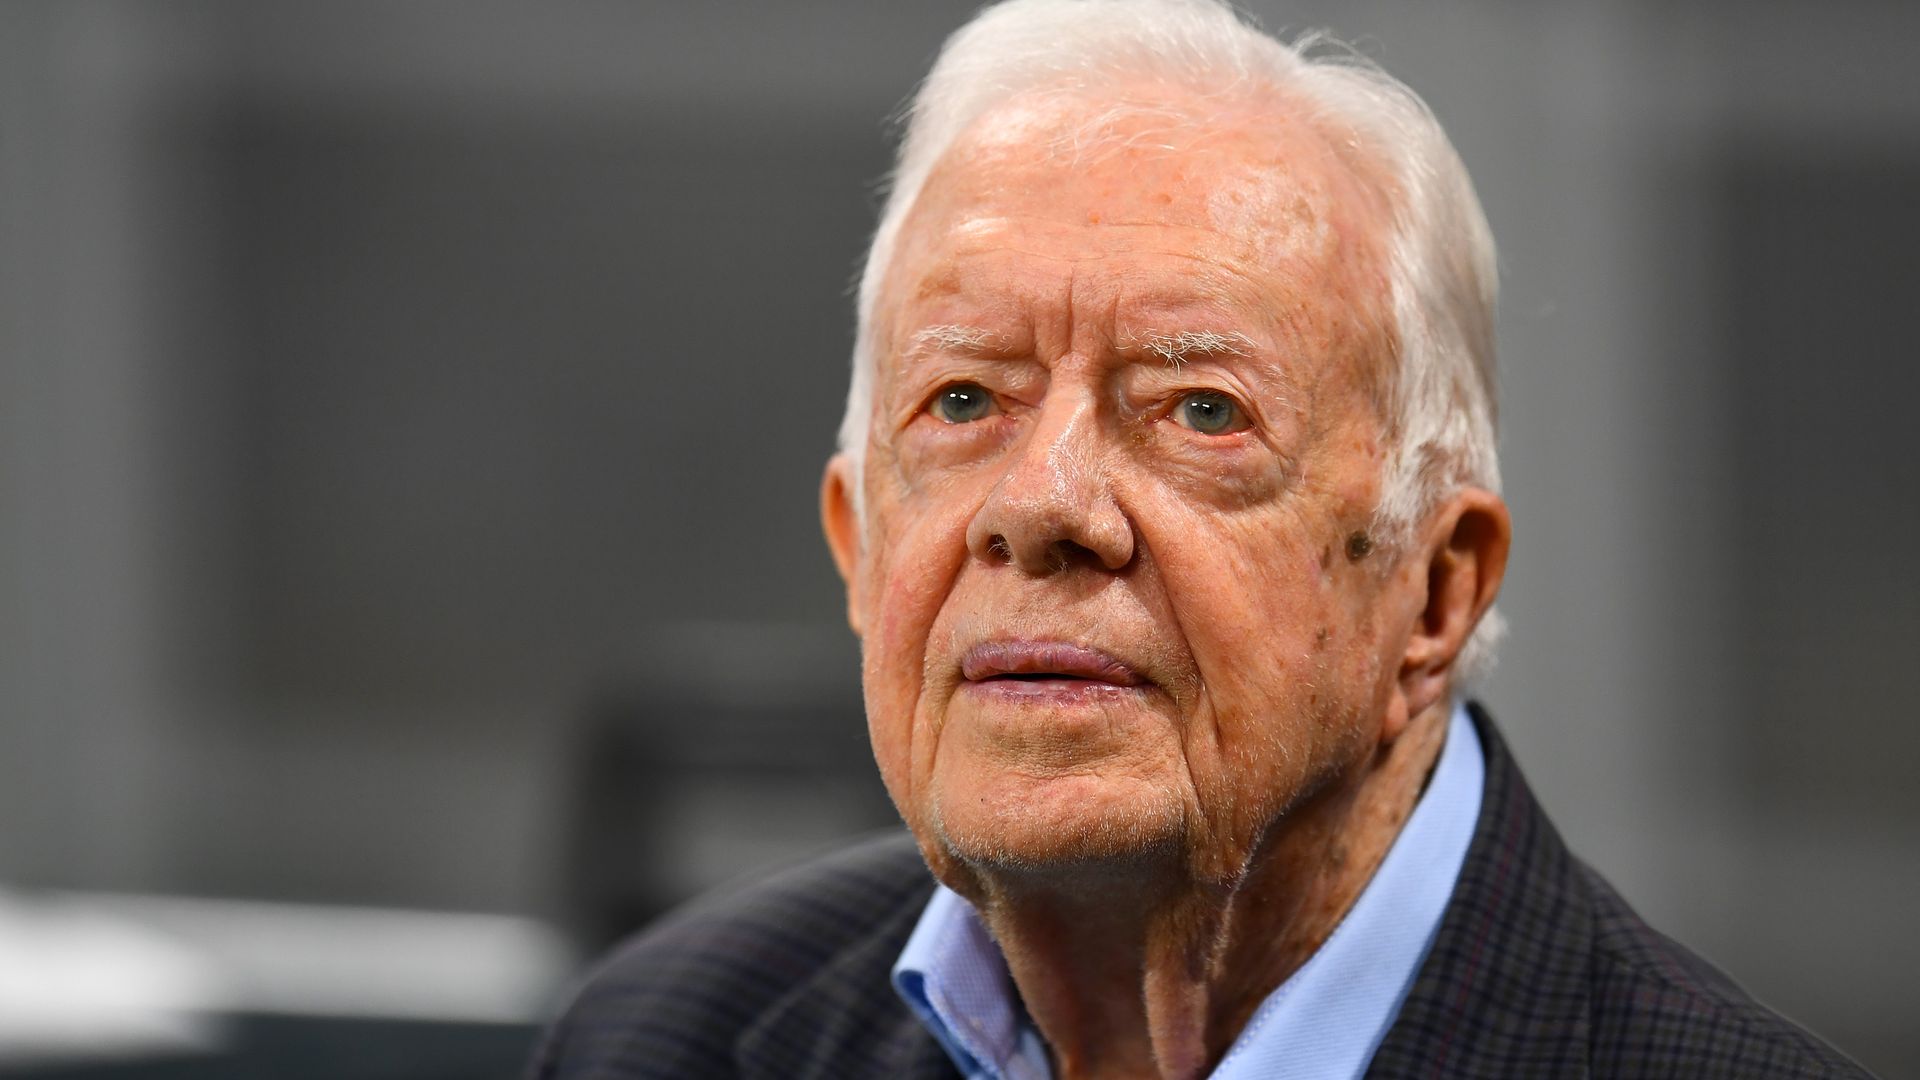 President Jimmy Carter's grandson shares heartbreaking update on